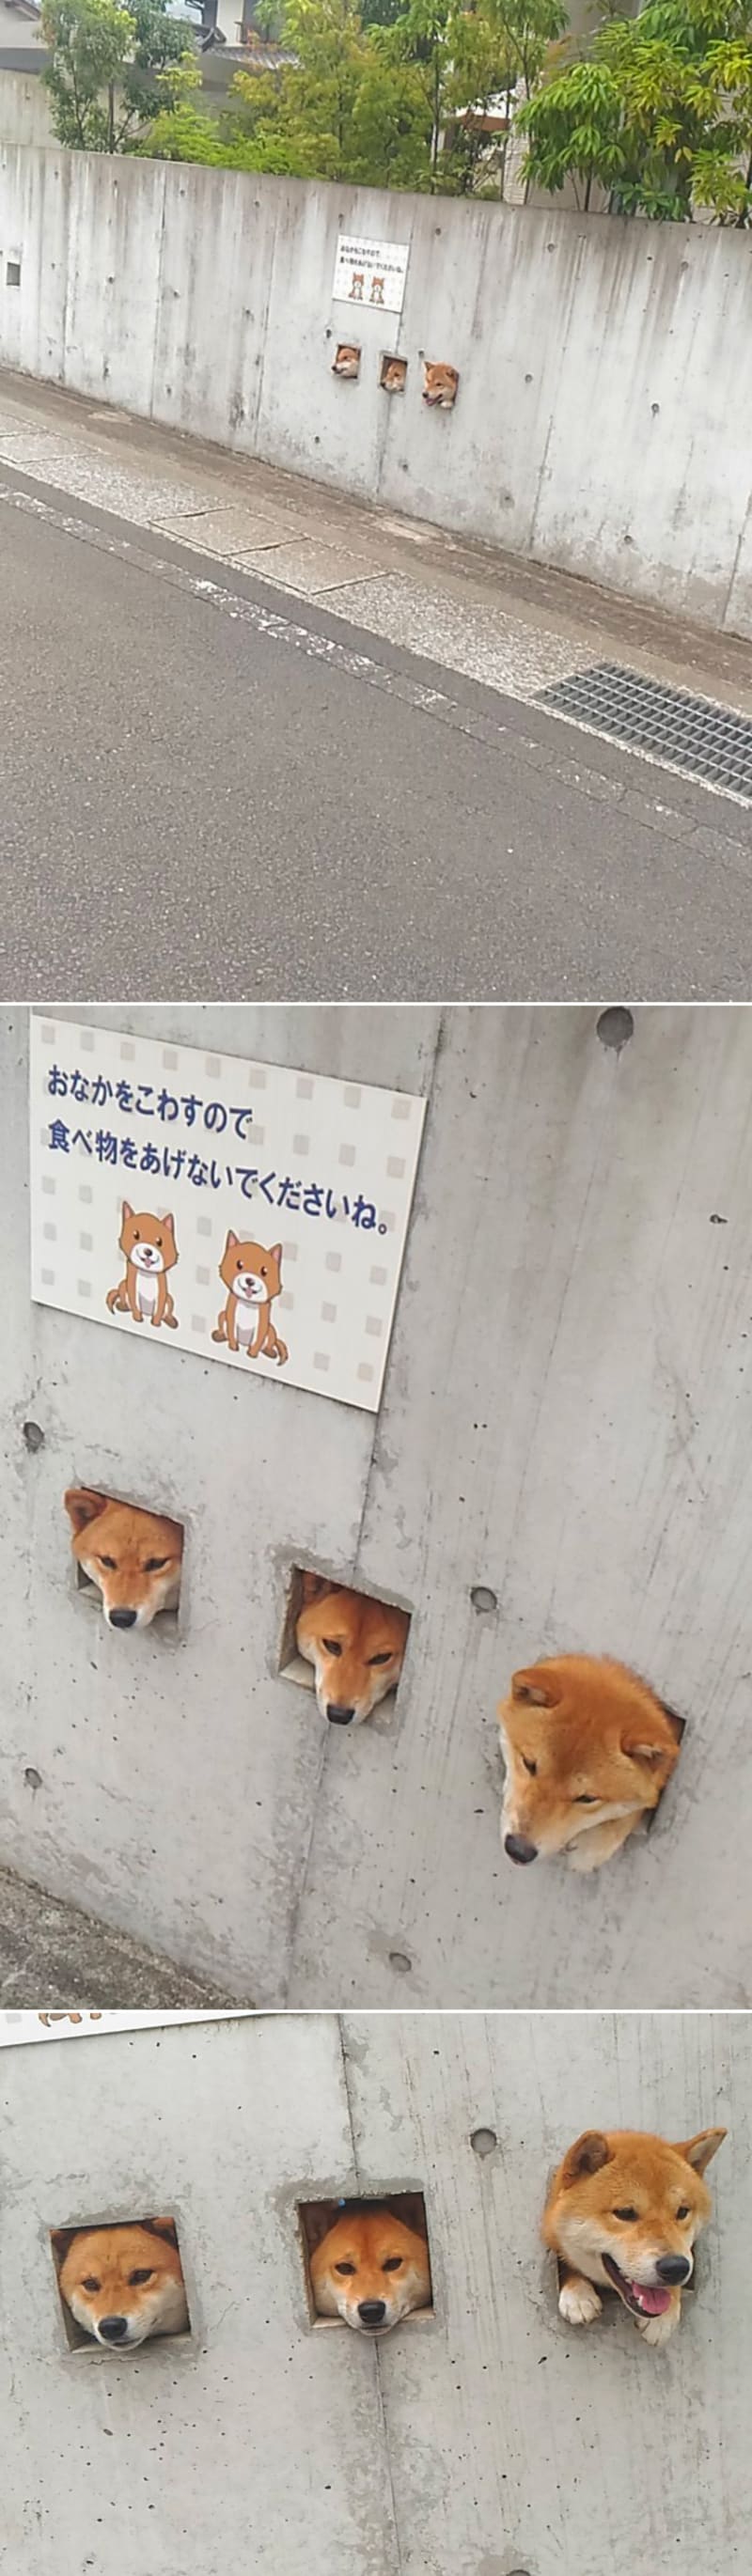 Vtipné fotky psů koukajících oknem v plotě 16